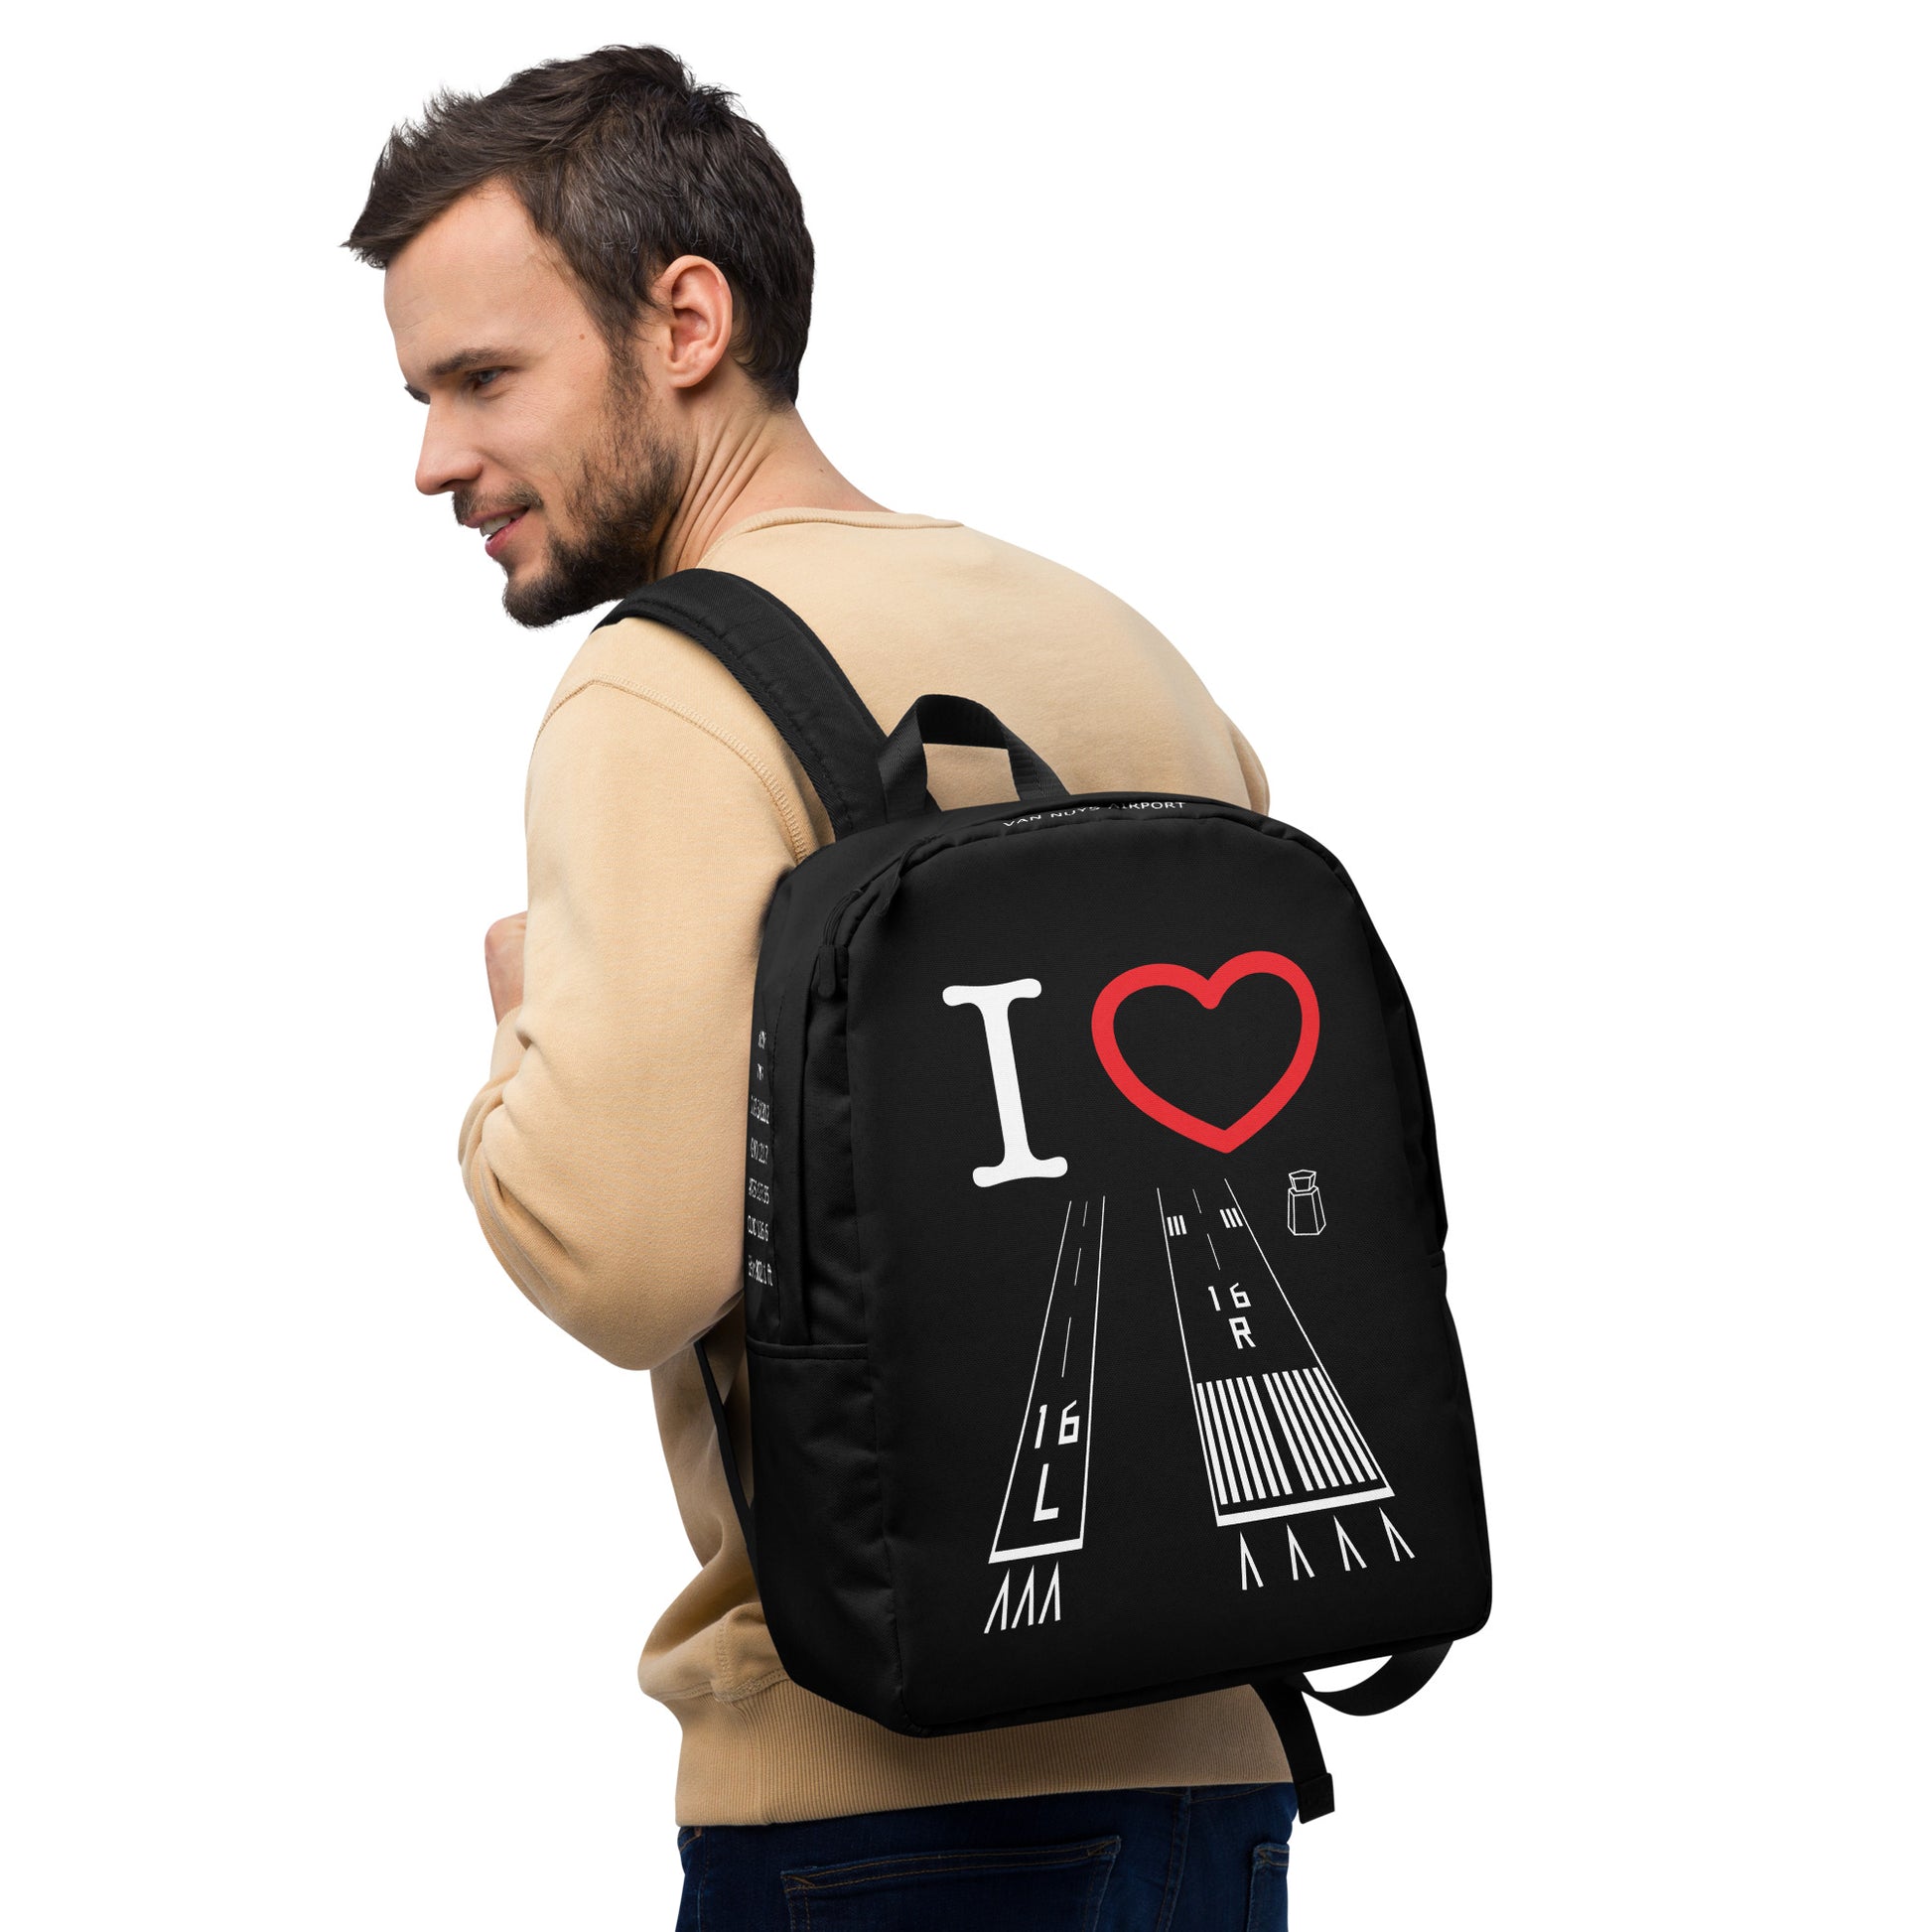 Van Nuys Airport Runways 16L / 16R - black minimalist backpack